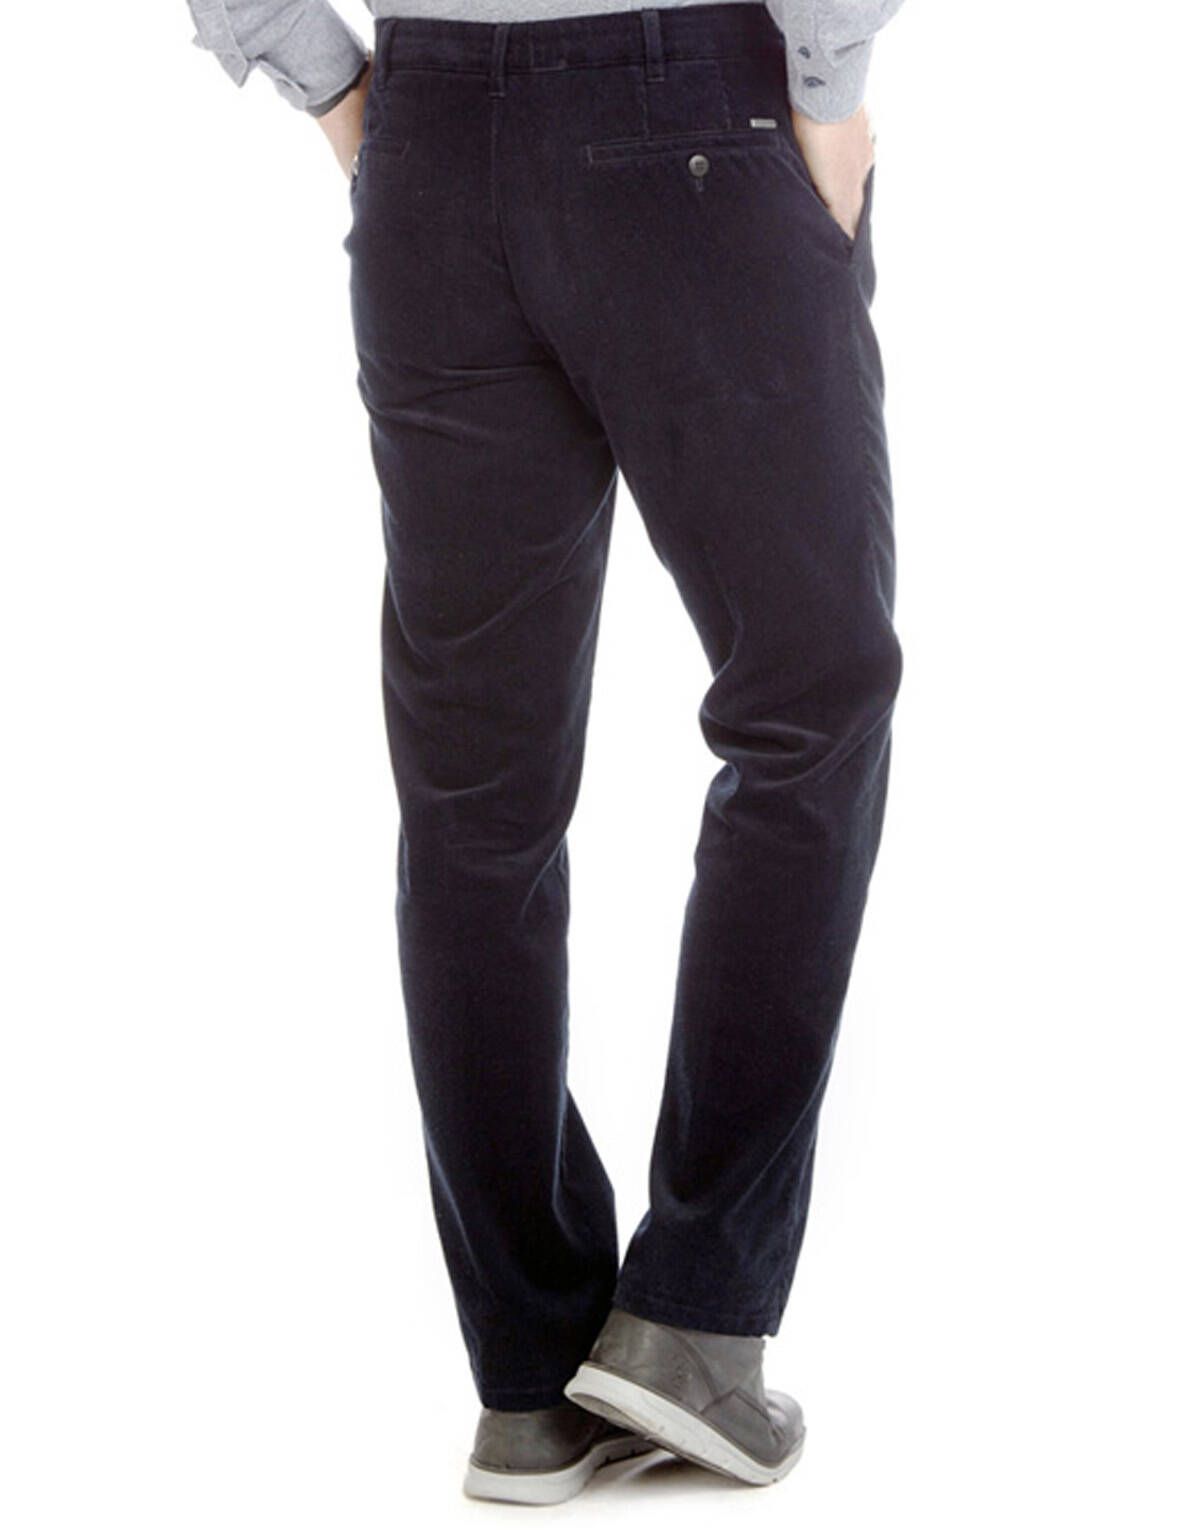 Вельветовые синие брюки, мод.Eton | купить в интернет-магазине Olymp-Men